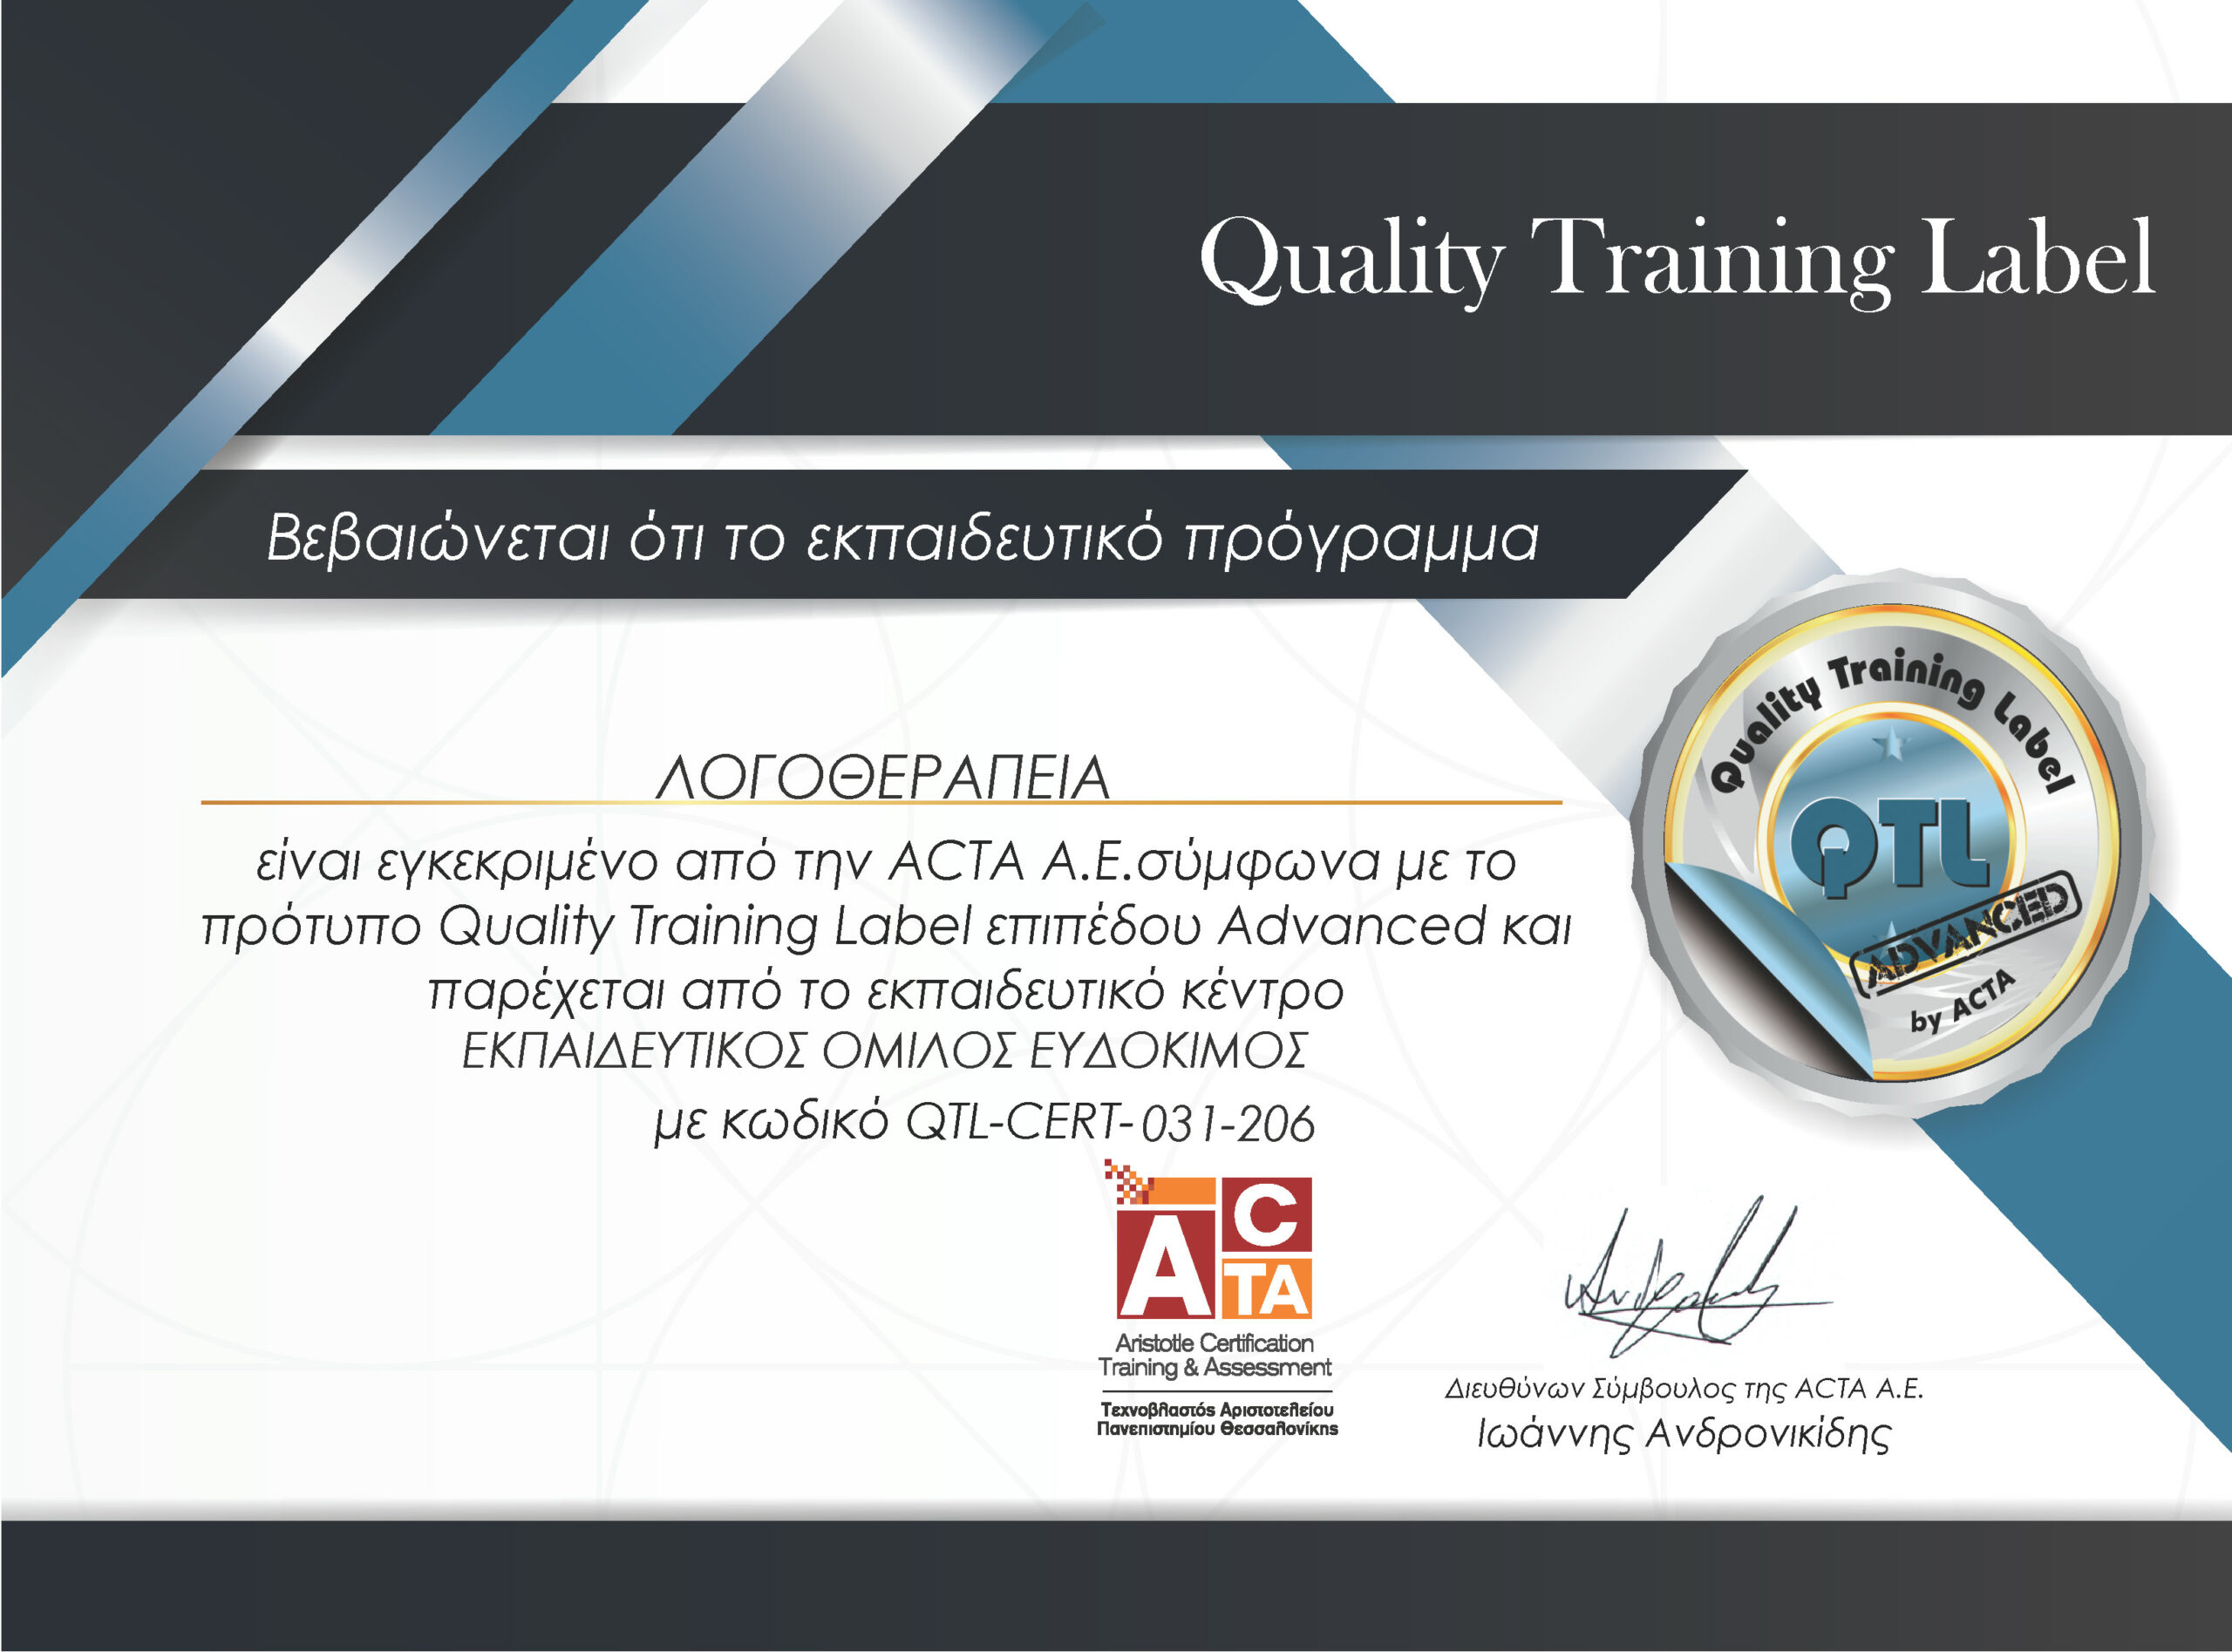 Λογοθεραπεία - Πιστοποιημένο εκπαιδευτικό πρόγραμμα της ACTA σύμφωνα με το πρότυπο QTL επιπέδου Advanced